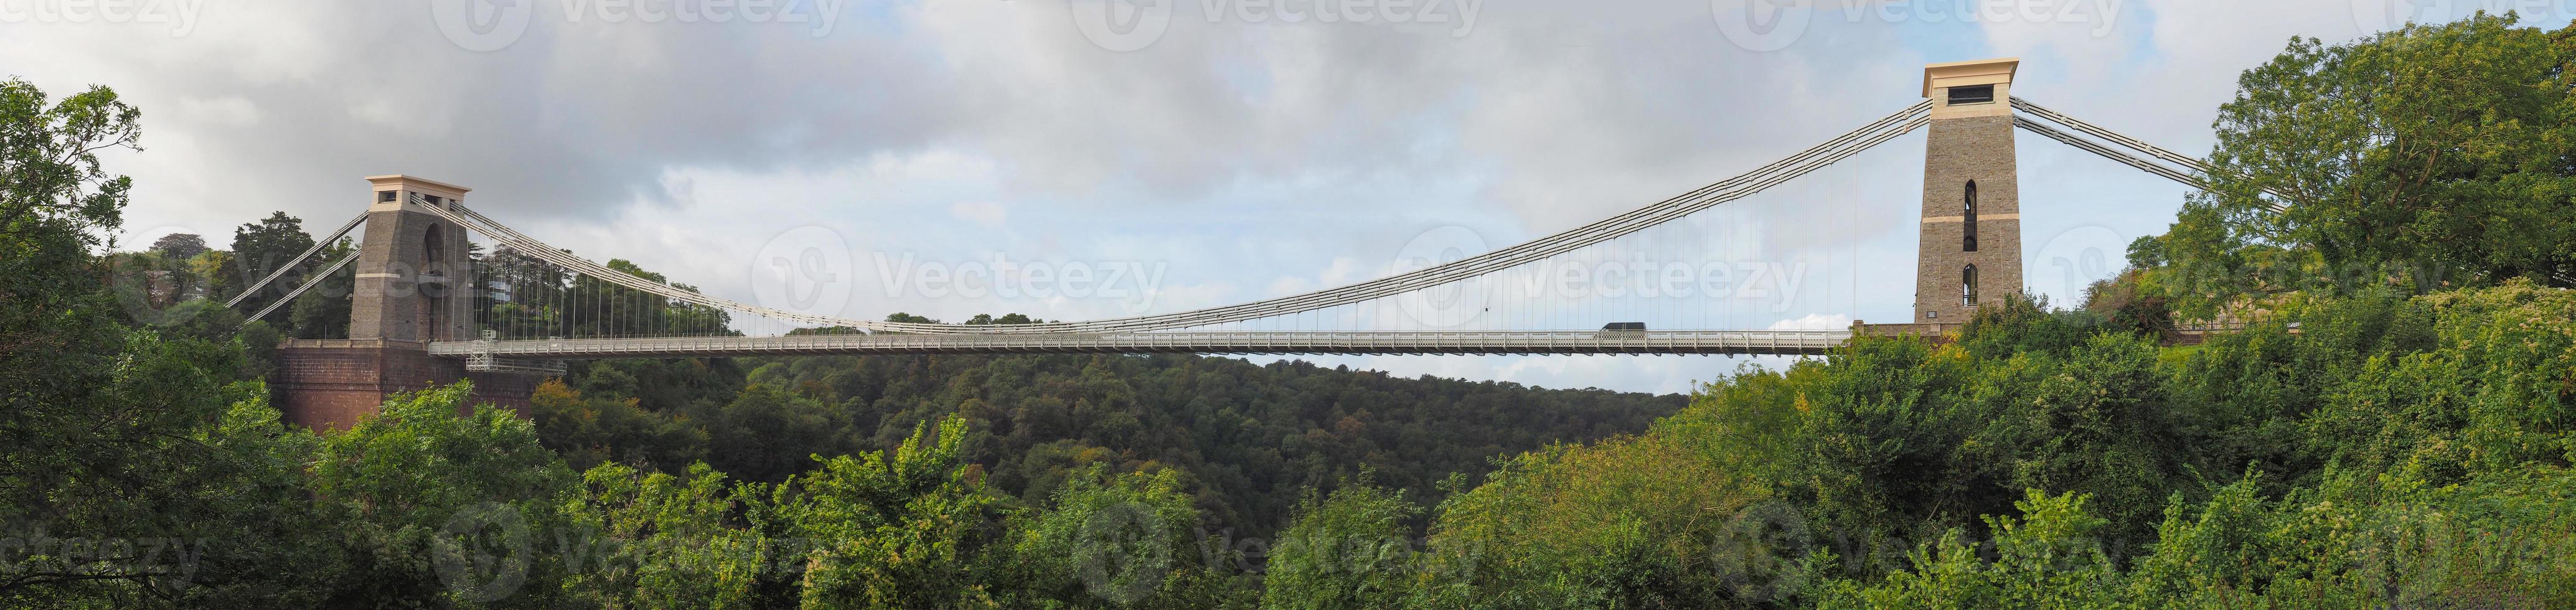 Clifton Suspension Bridge in Bristol photo